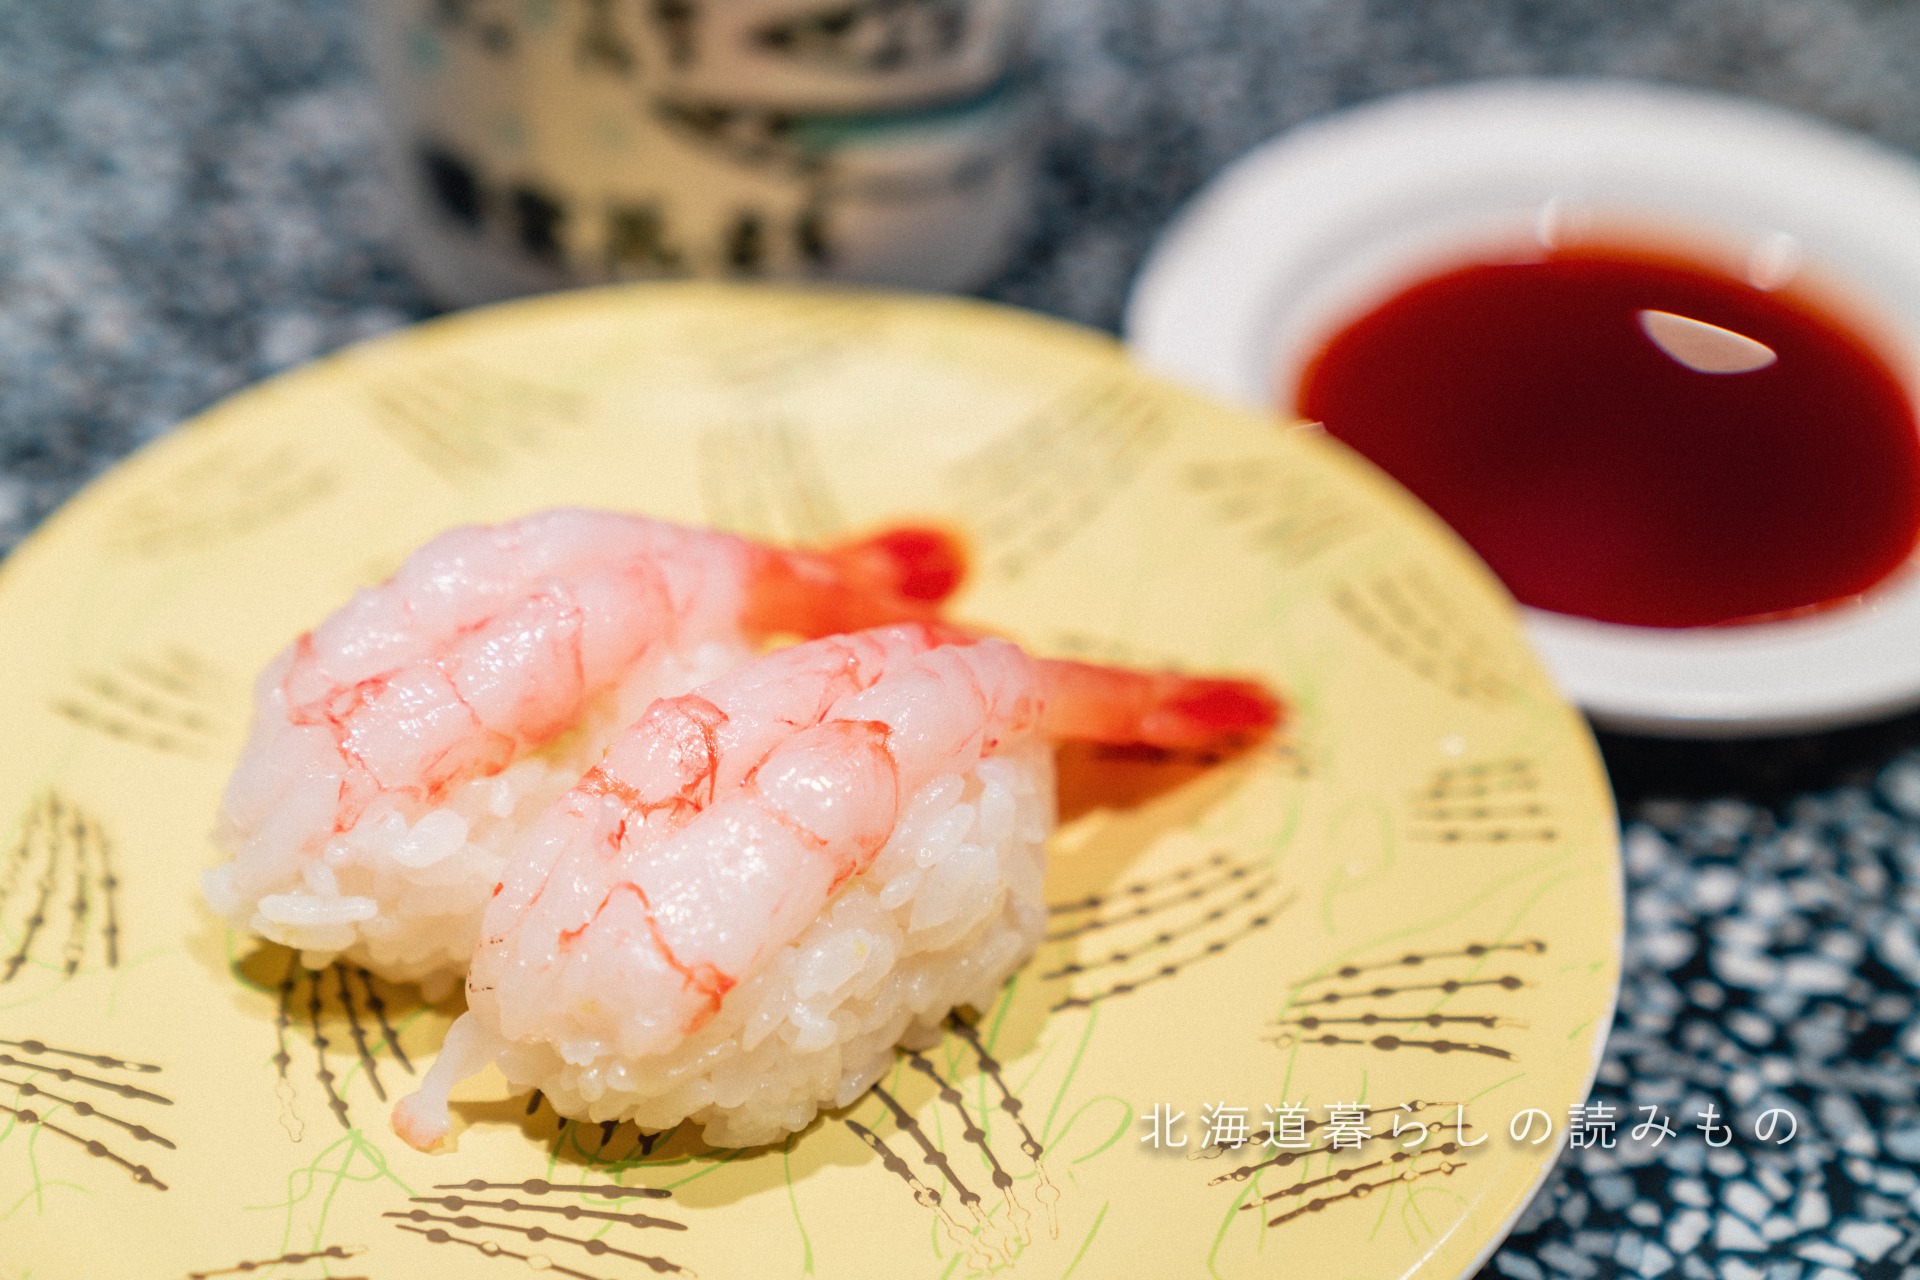 迴轉壽司根室花丸的菜單上的「Sweet Shrimp」